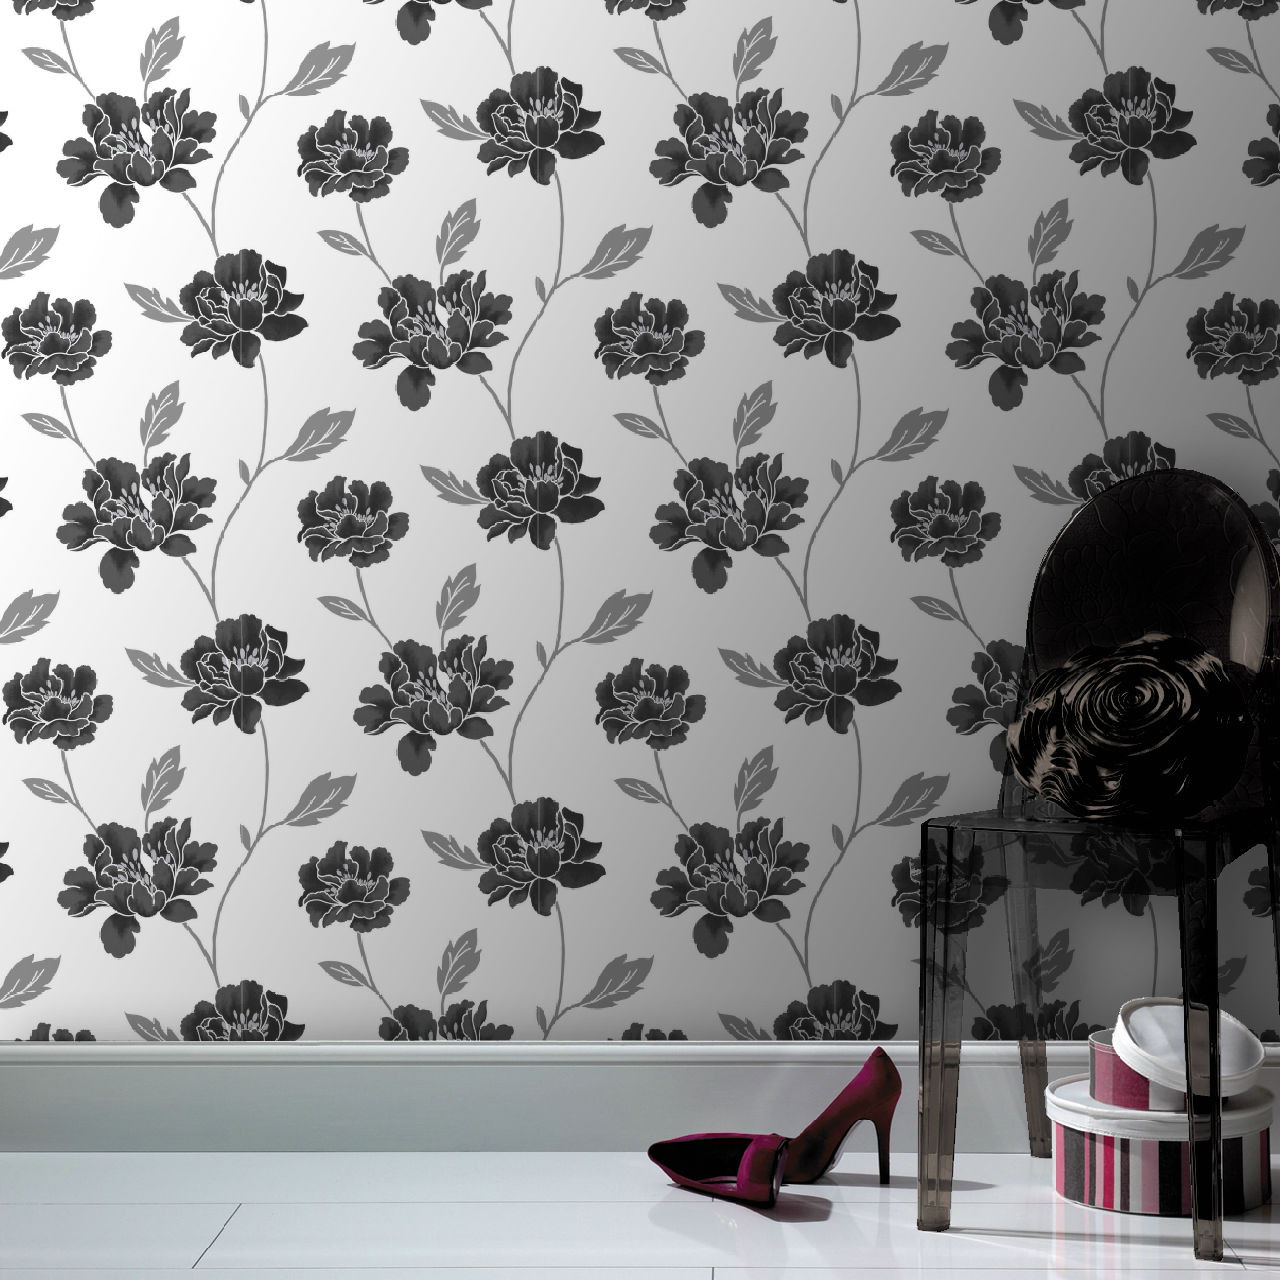 英国格兰布朗客厅 卧室 走道适合大面积的壁纸